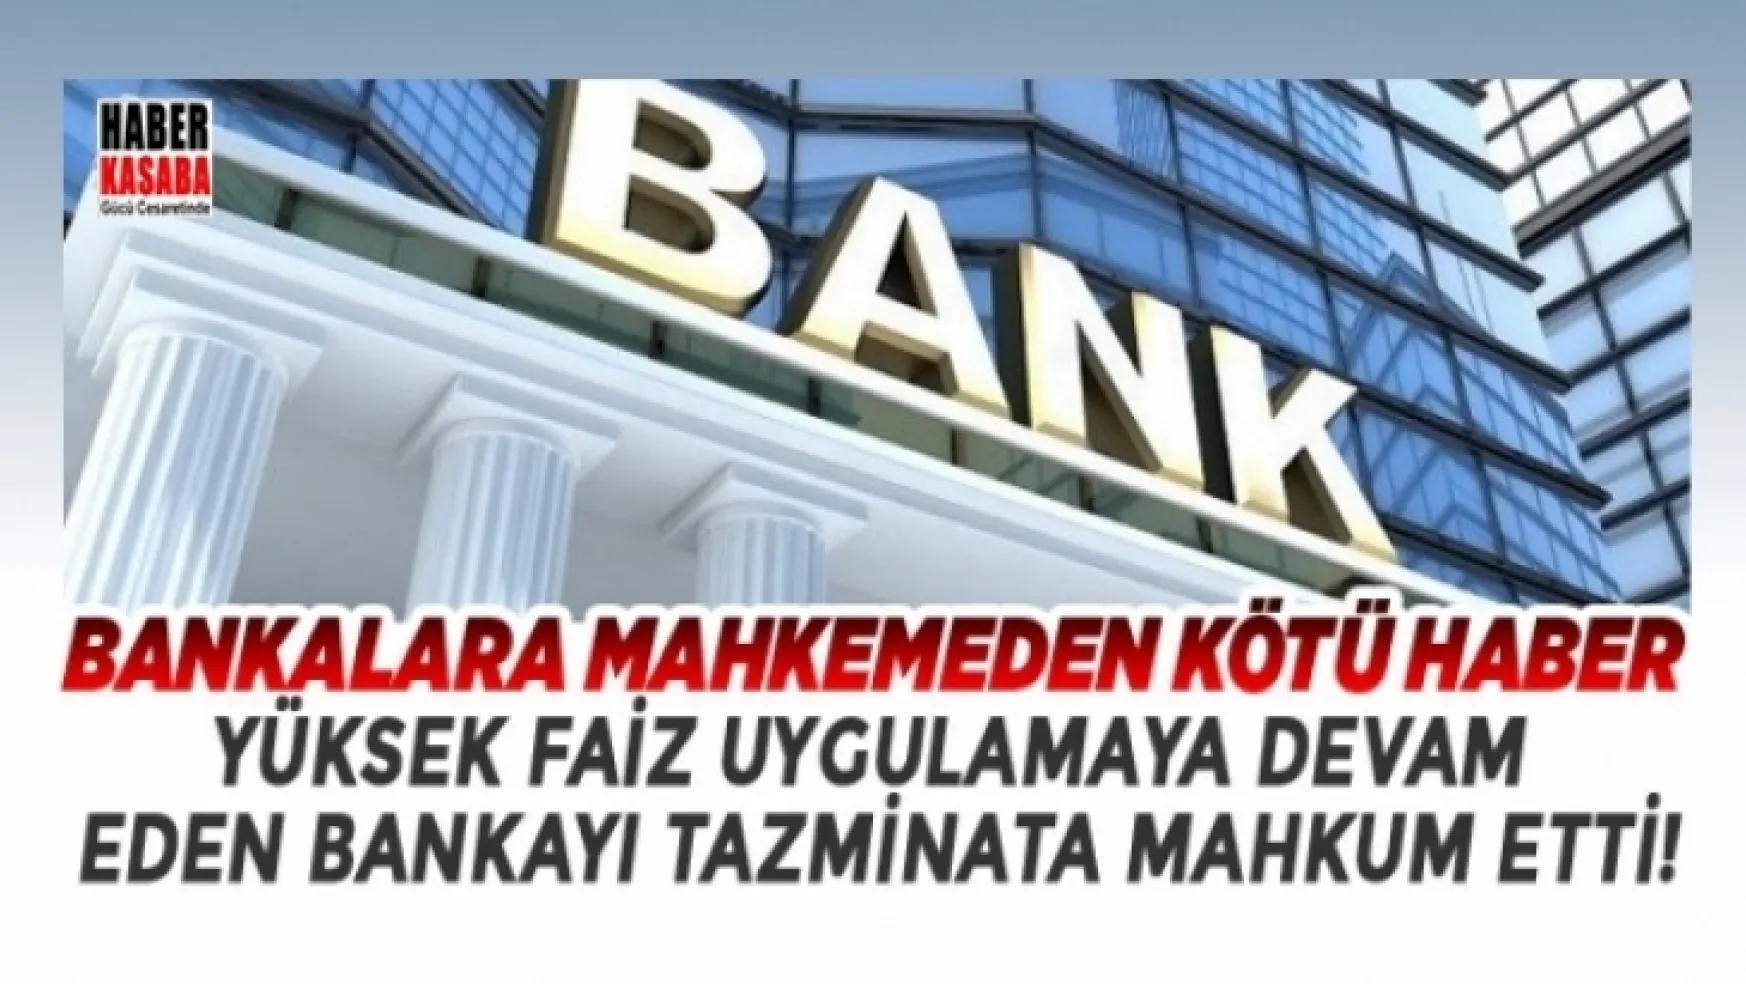 Bankalara mahkemeden kötü haber geldi